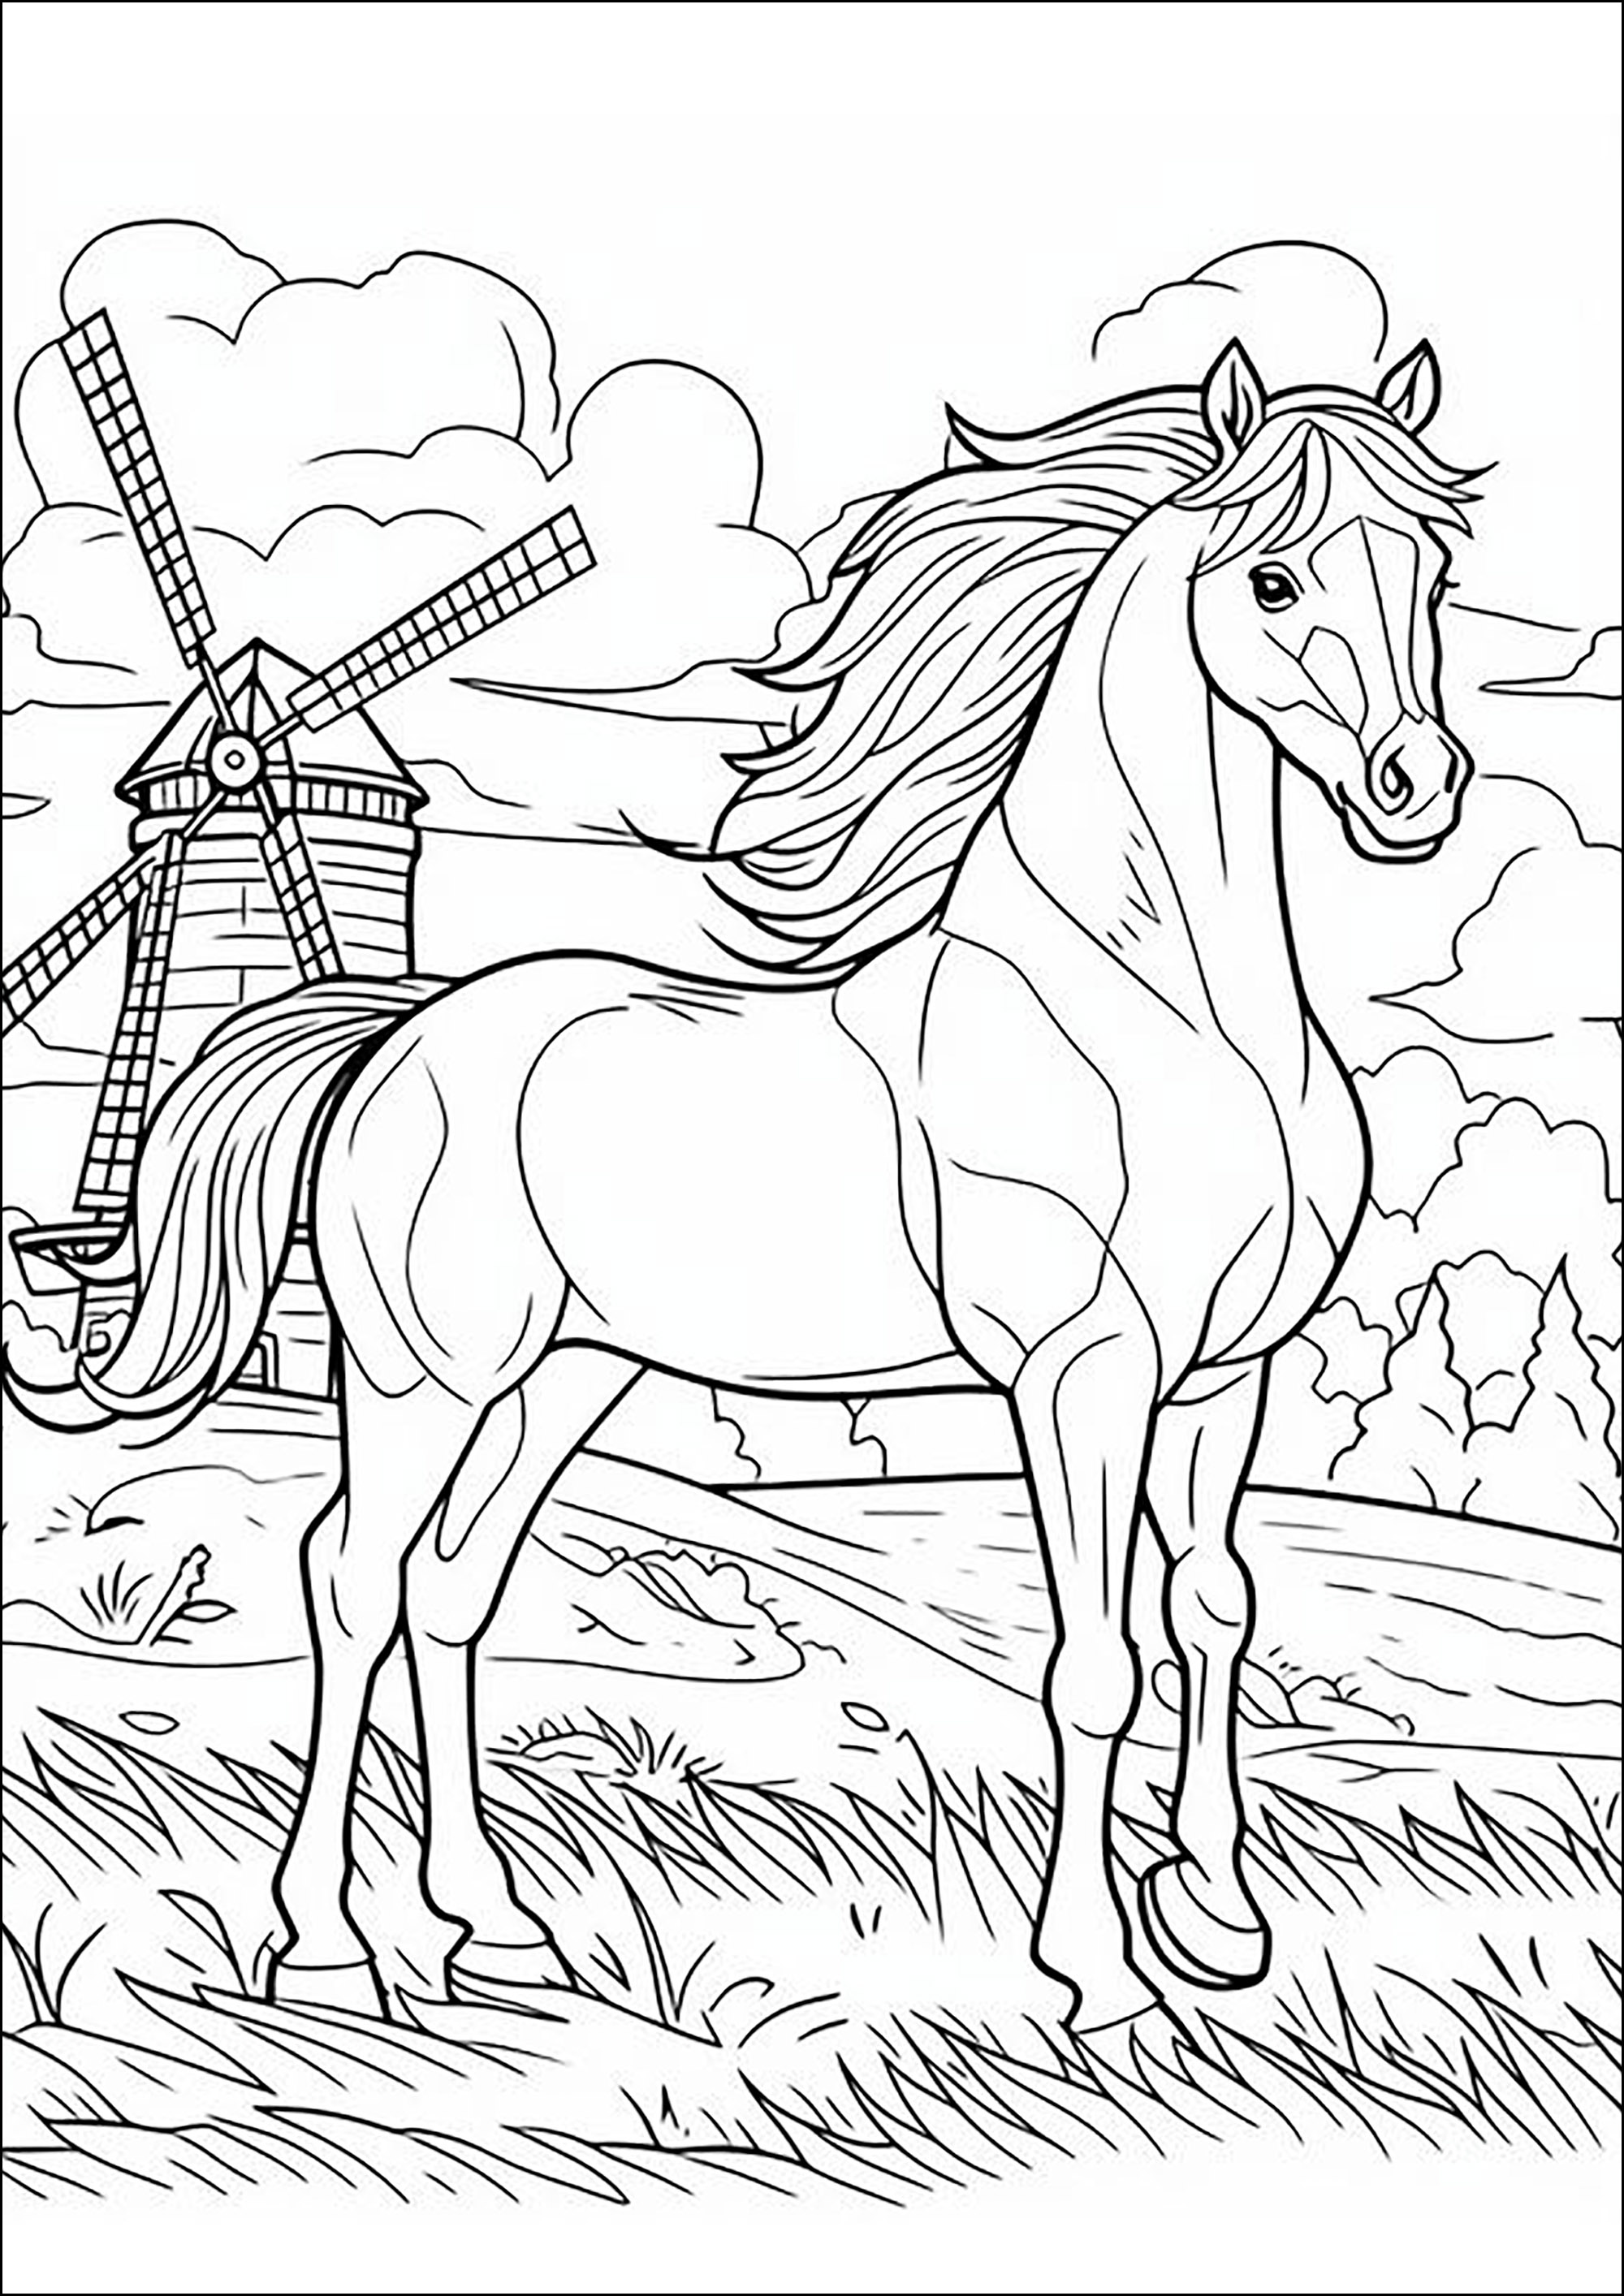 Cavallo con criniera al vento, con un mulino a vento sullo sfondo. Una pagina da colorare che ispira